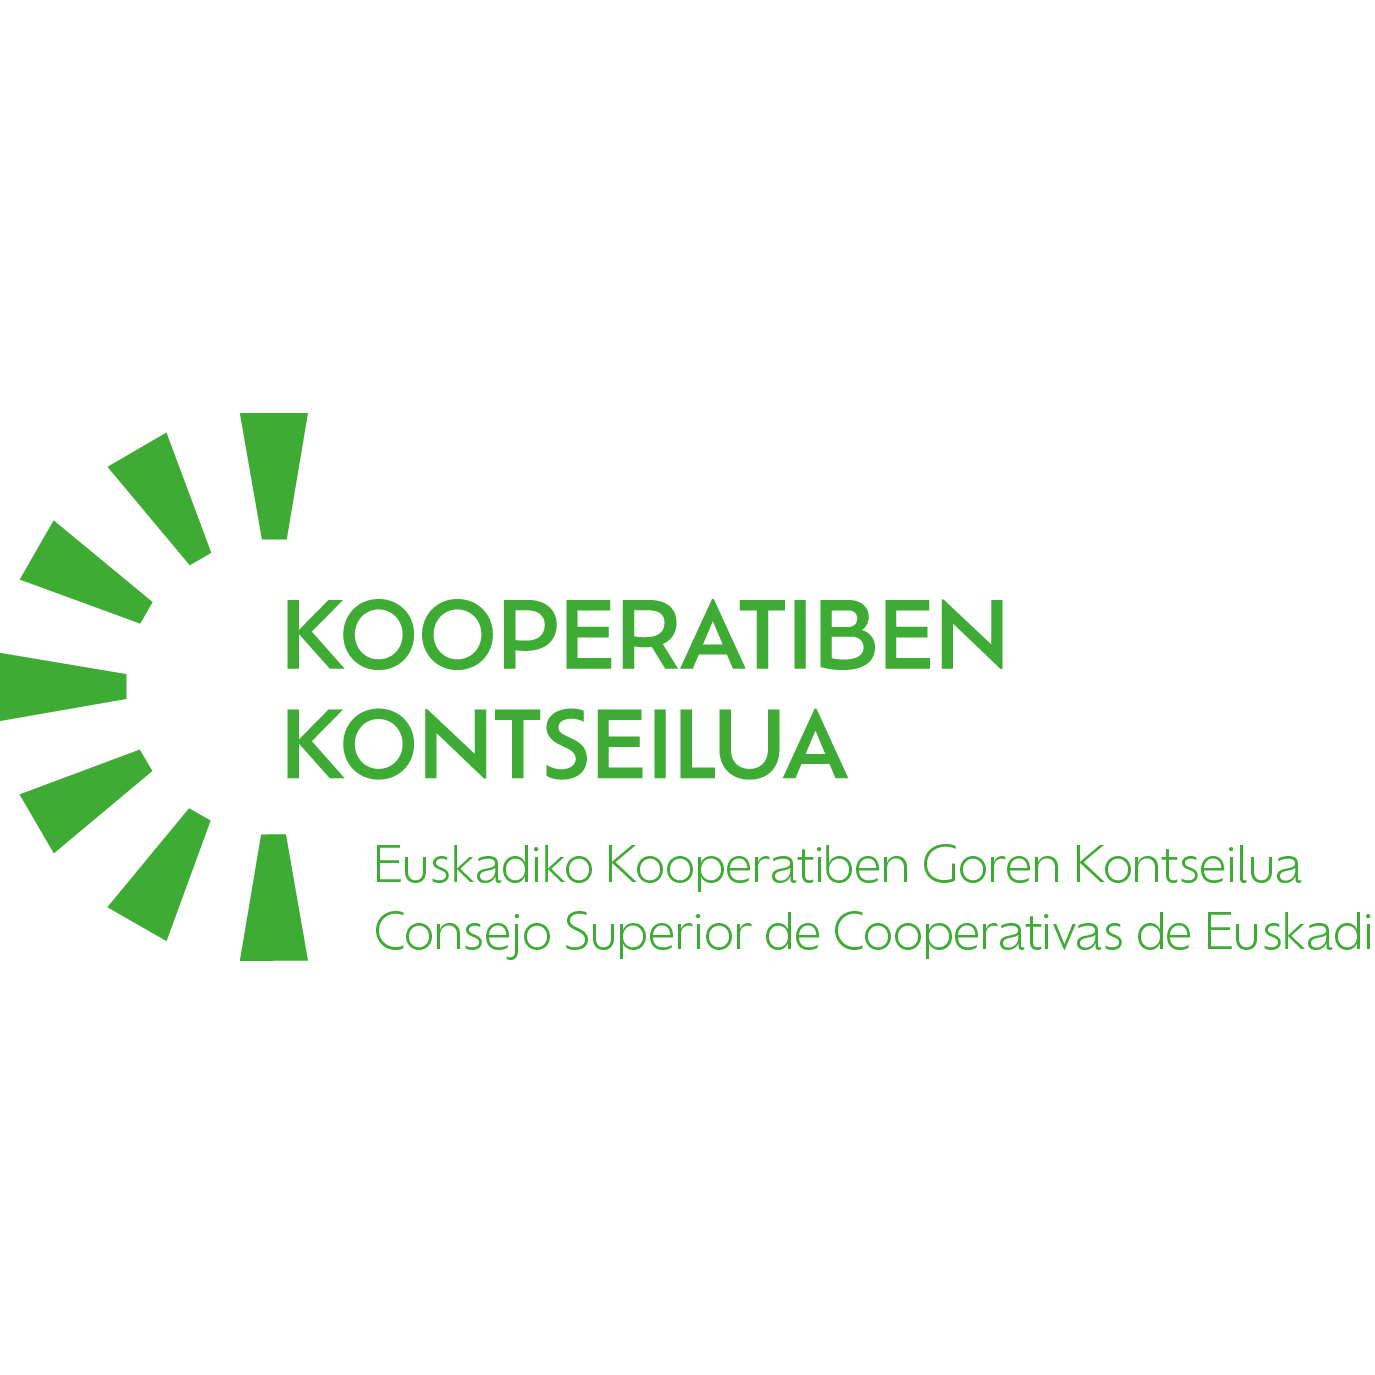 Consejo Superior De Cooperativas De Euskadi-Euskadiko Kooperatiben Goren-kontseilua Logo